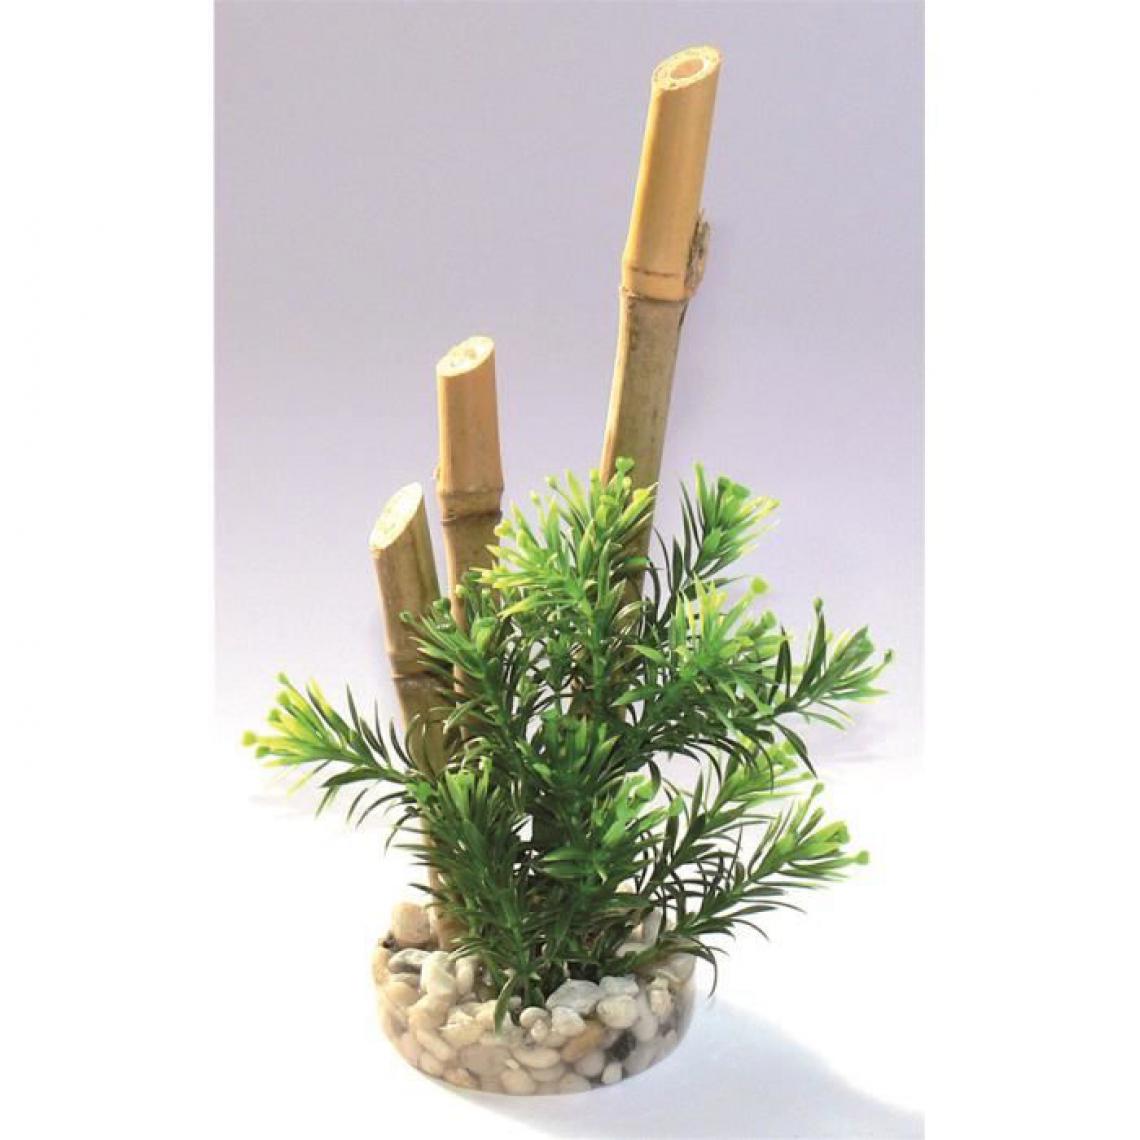 Cstore - SYDECO Bambou plantes - Décoration bambou plantes + support pour Aquarium - Décoration aquarium